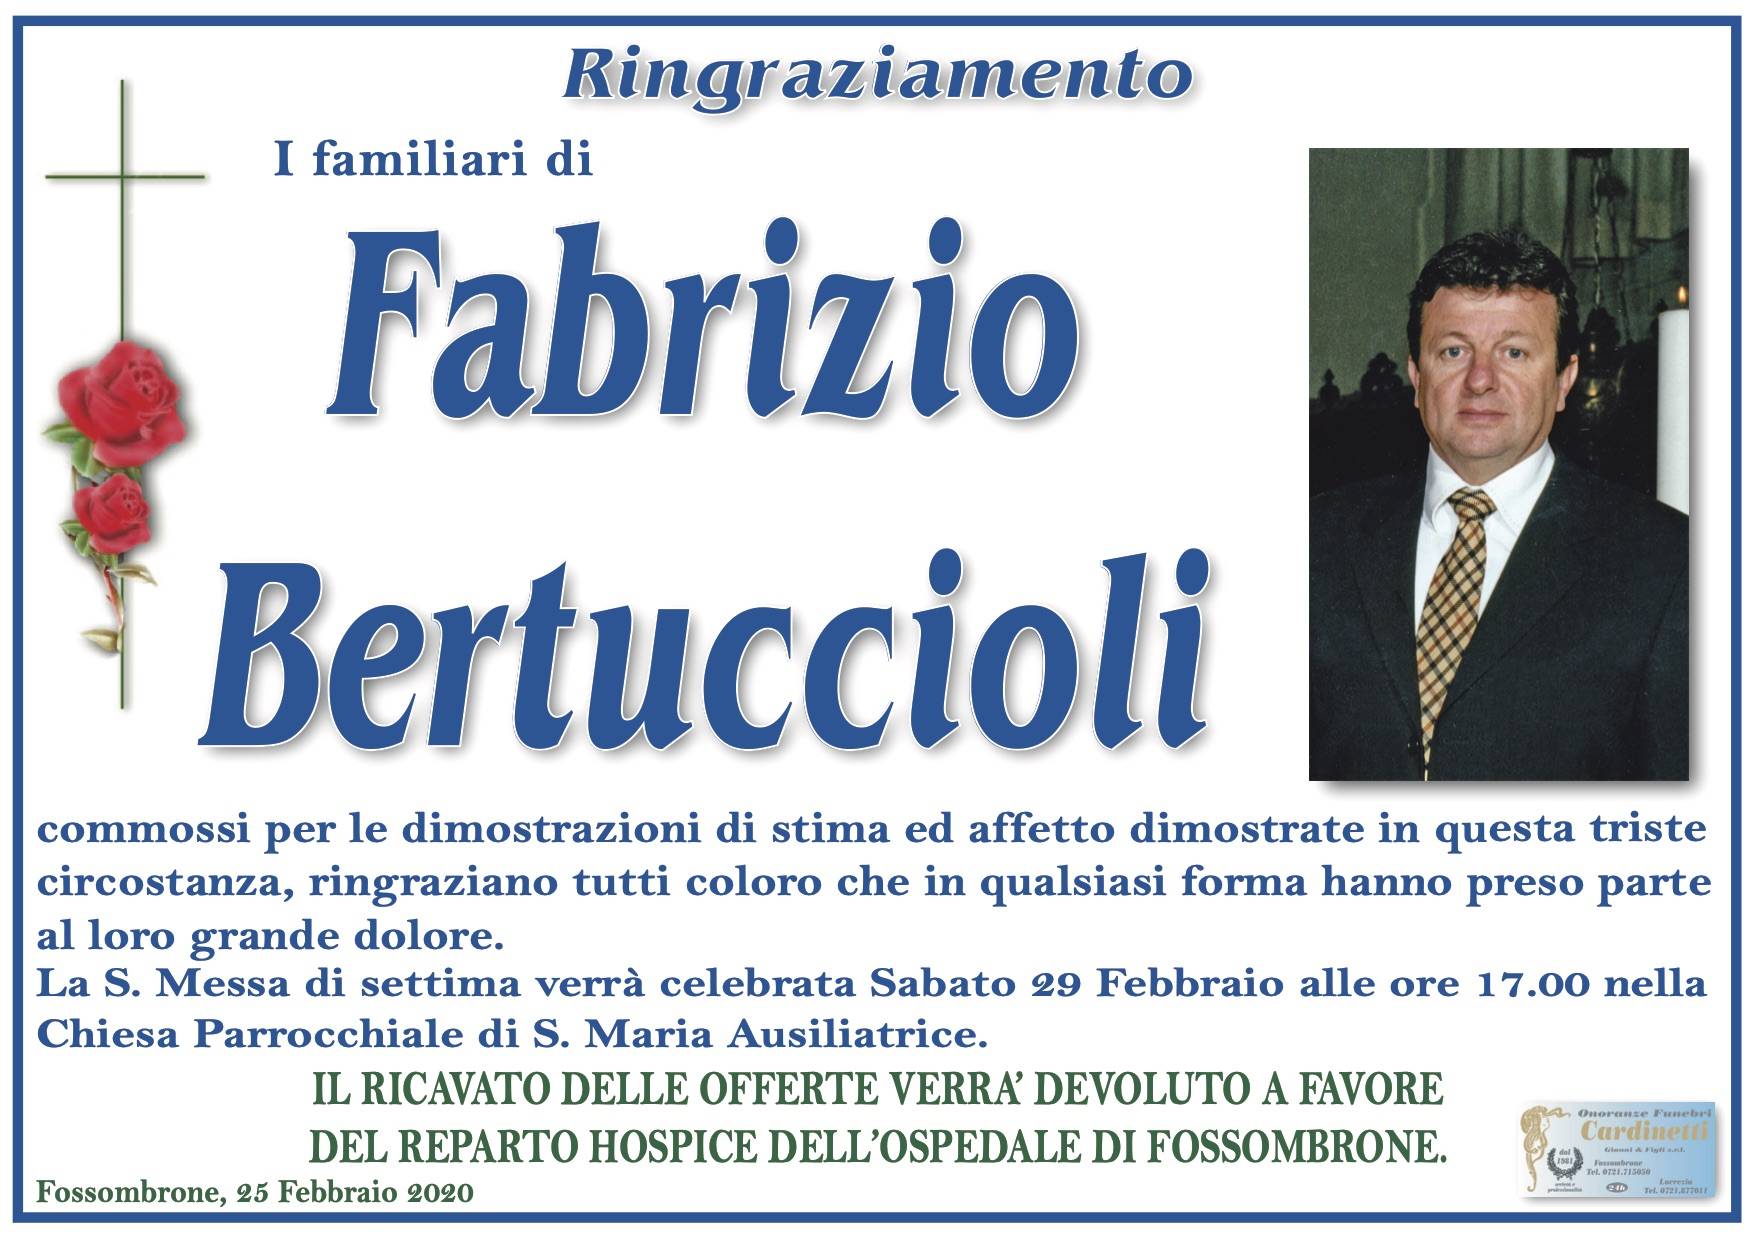 Fabrizio Bertuccioli